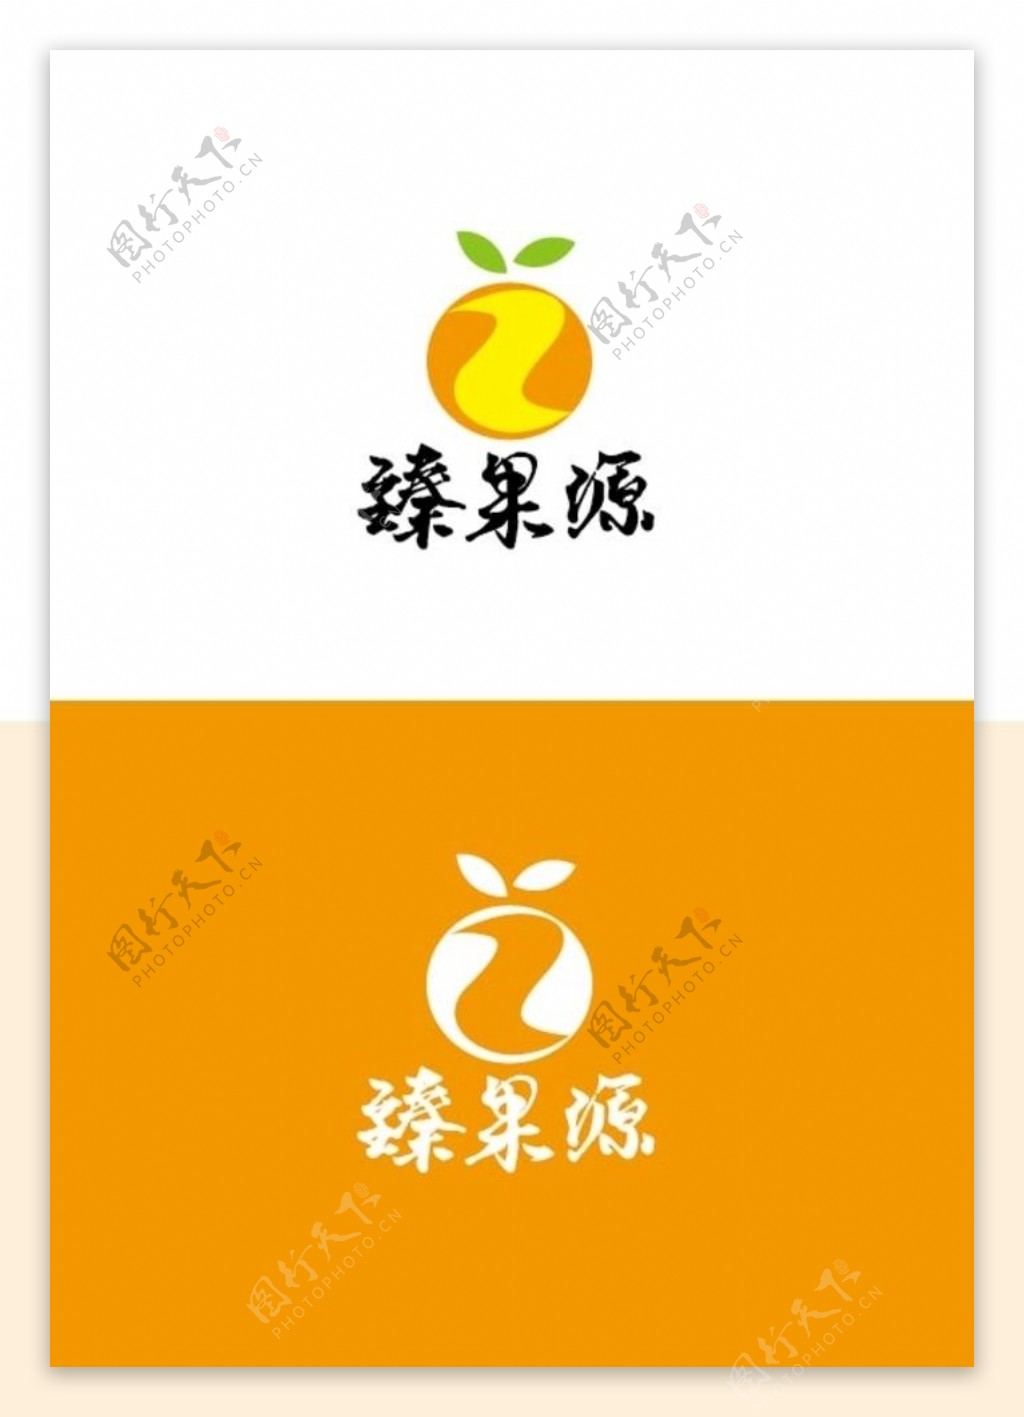 水果标识设计